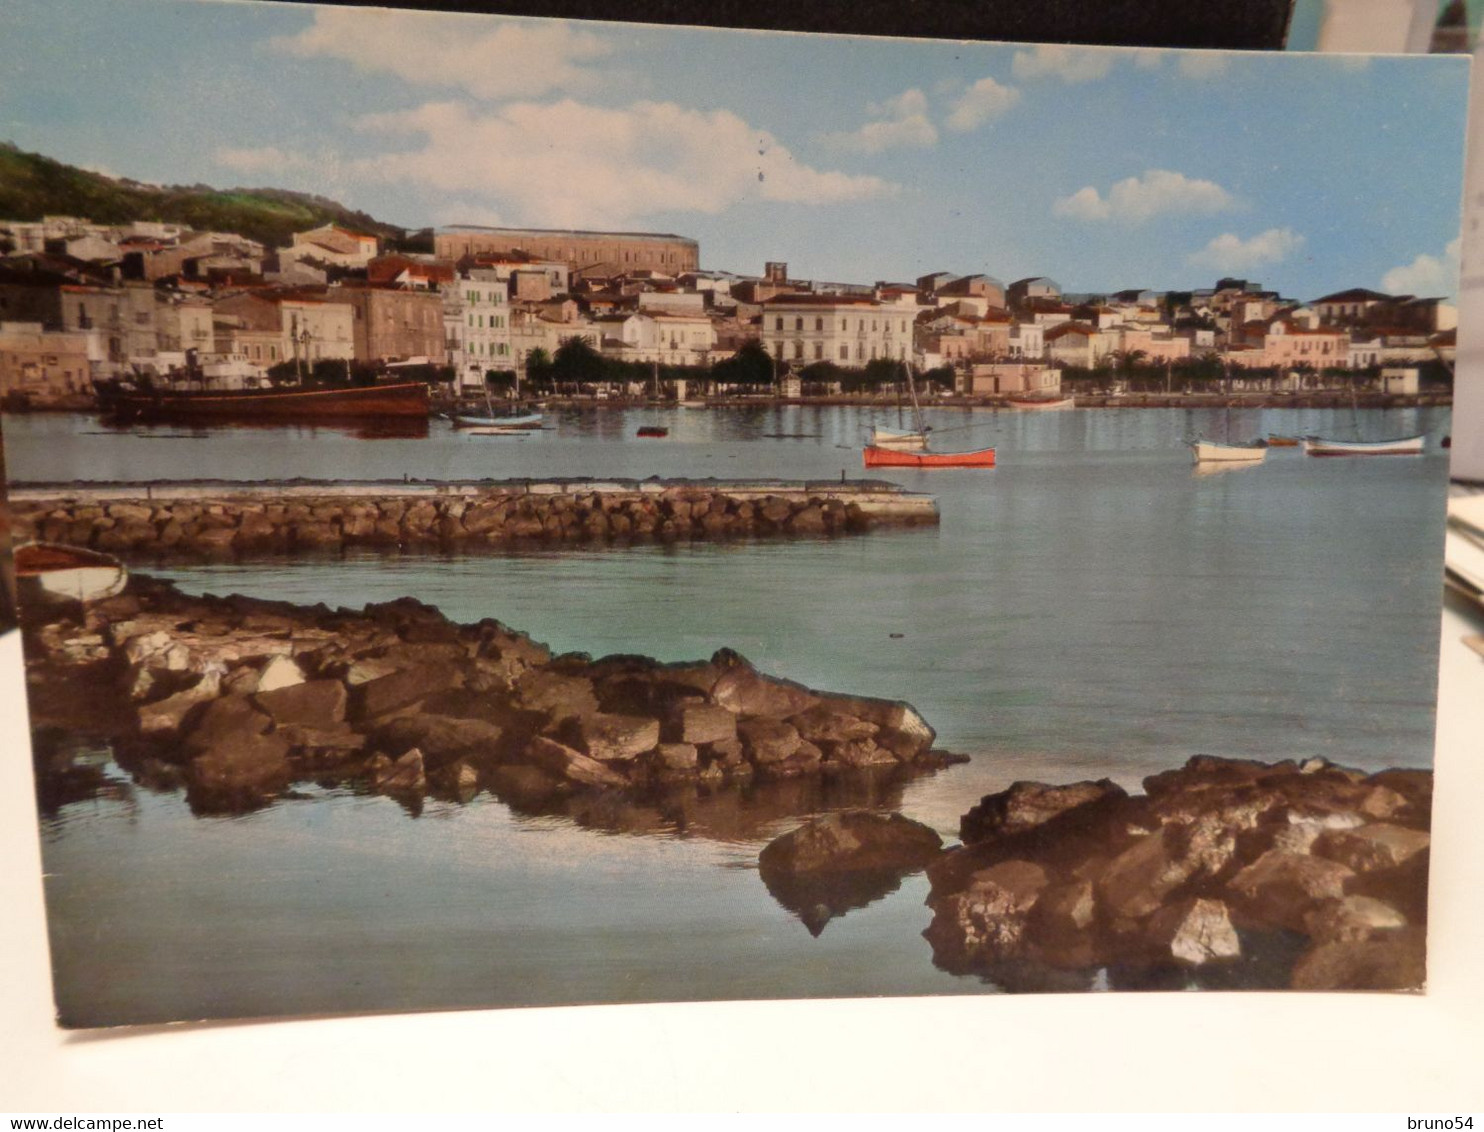 4 cartoline Carloforte provincia Sud Sardegna Carbonia viaggiate anni 70, porto, stazione marittima